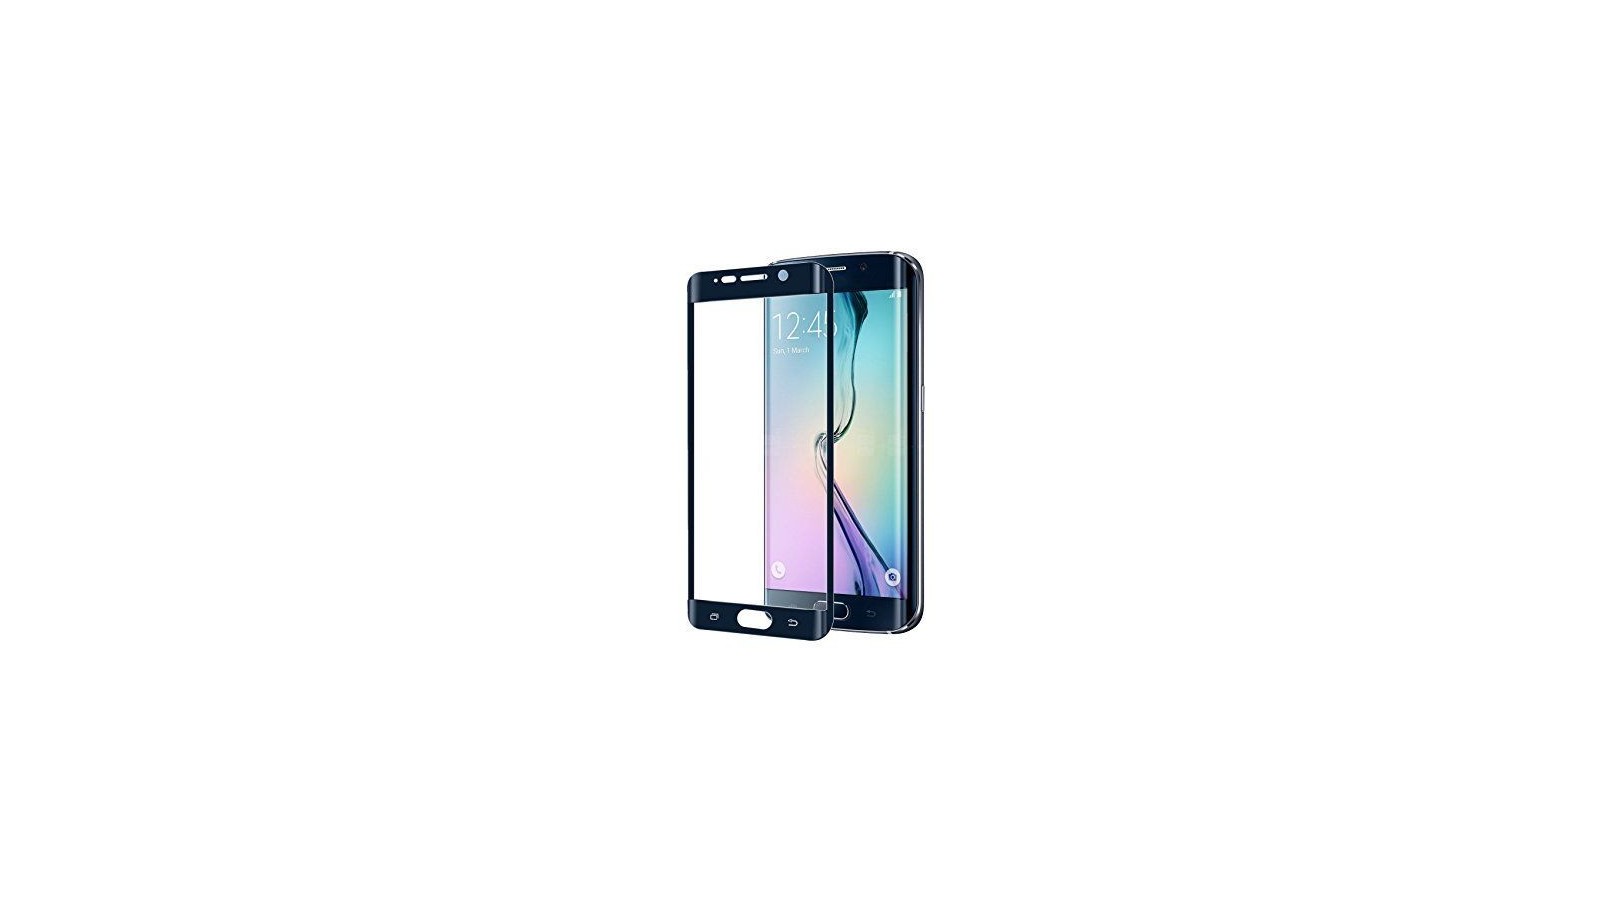 Pellicola nera curva in vetro temperato per Samsung Galaxy S6 Edge